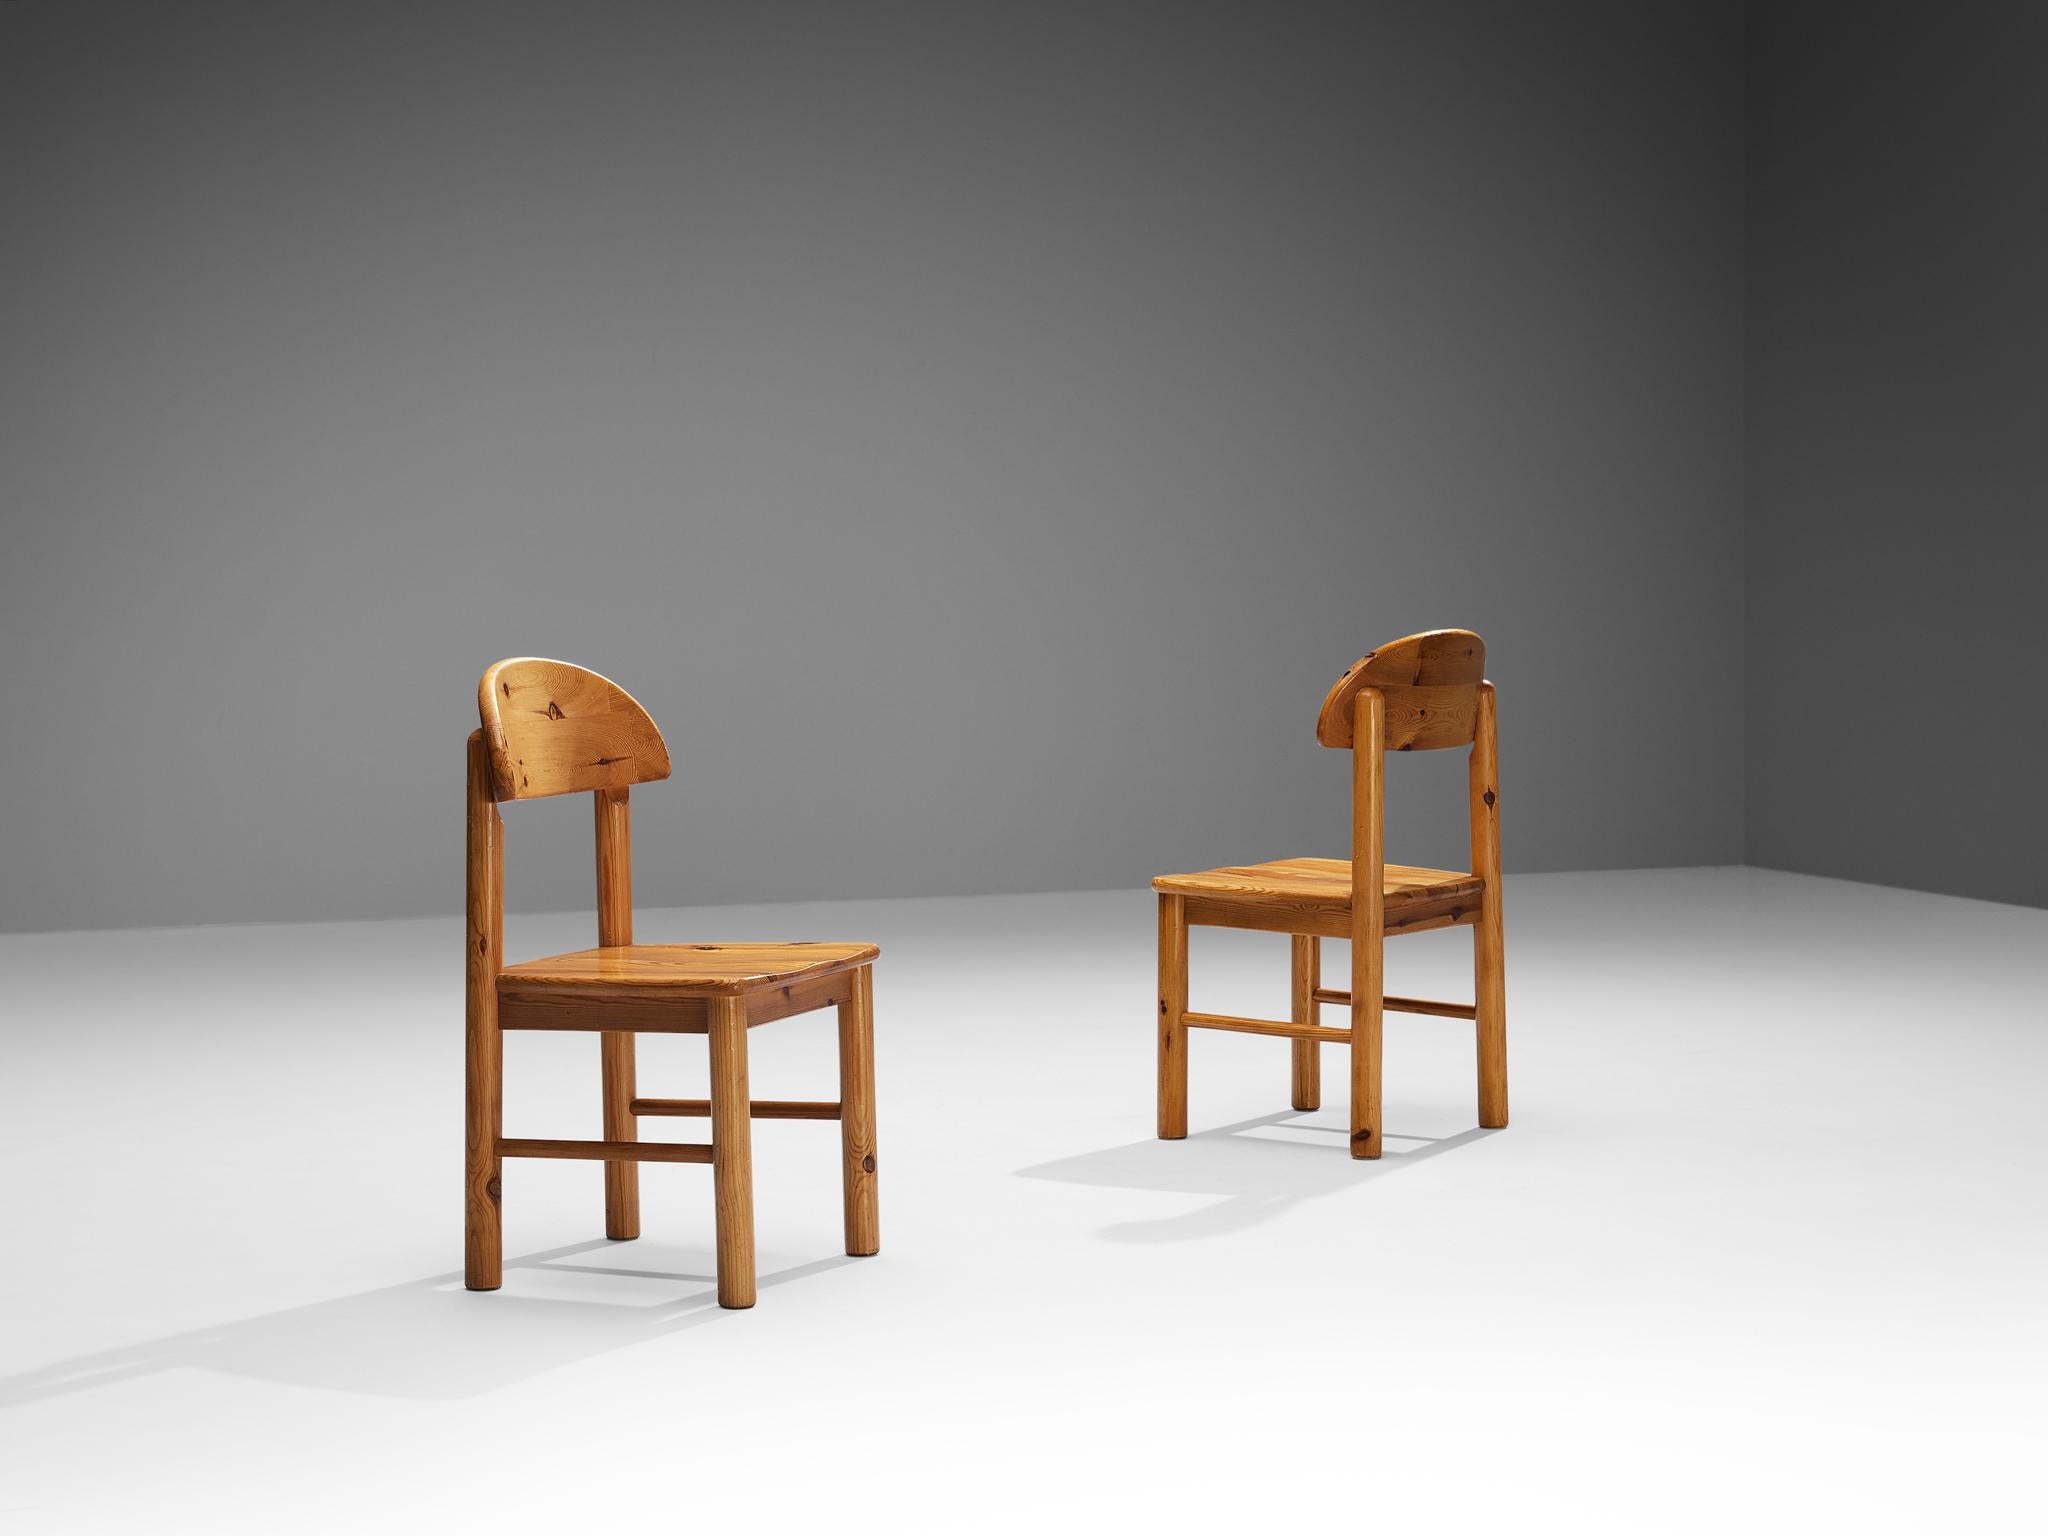 Rainer Daumiller pour Hirtshals Sawmill, paire de chaises de salle à manger, pin, Danemark, années 1970

De belles chaises de salle à manger organiques et naturelles en pin massif conçues par Rainer Daumiller. Un design simpliste avec une assise